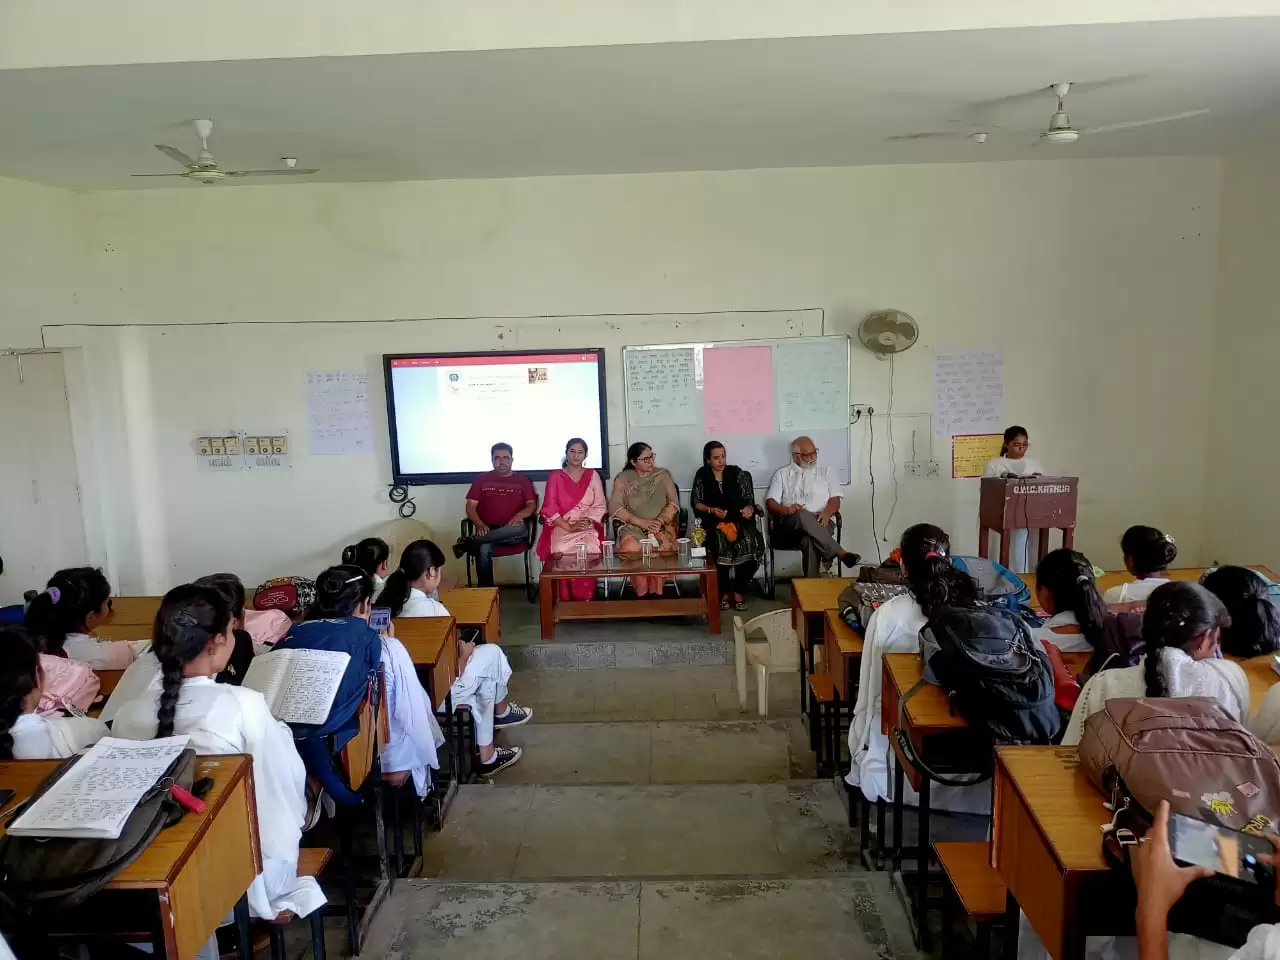 प्रेमचंद जयंती के उपलक्ष्य पर राजकीय महिला महाविद्यालय कठुआ में कार्यक्रम आयोजित